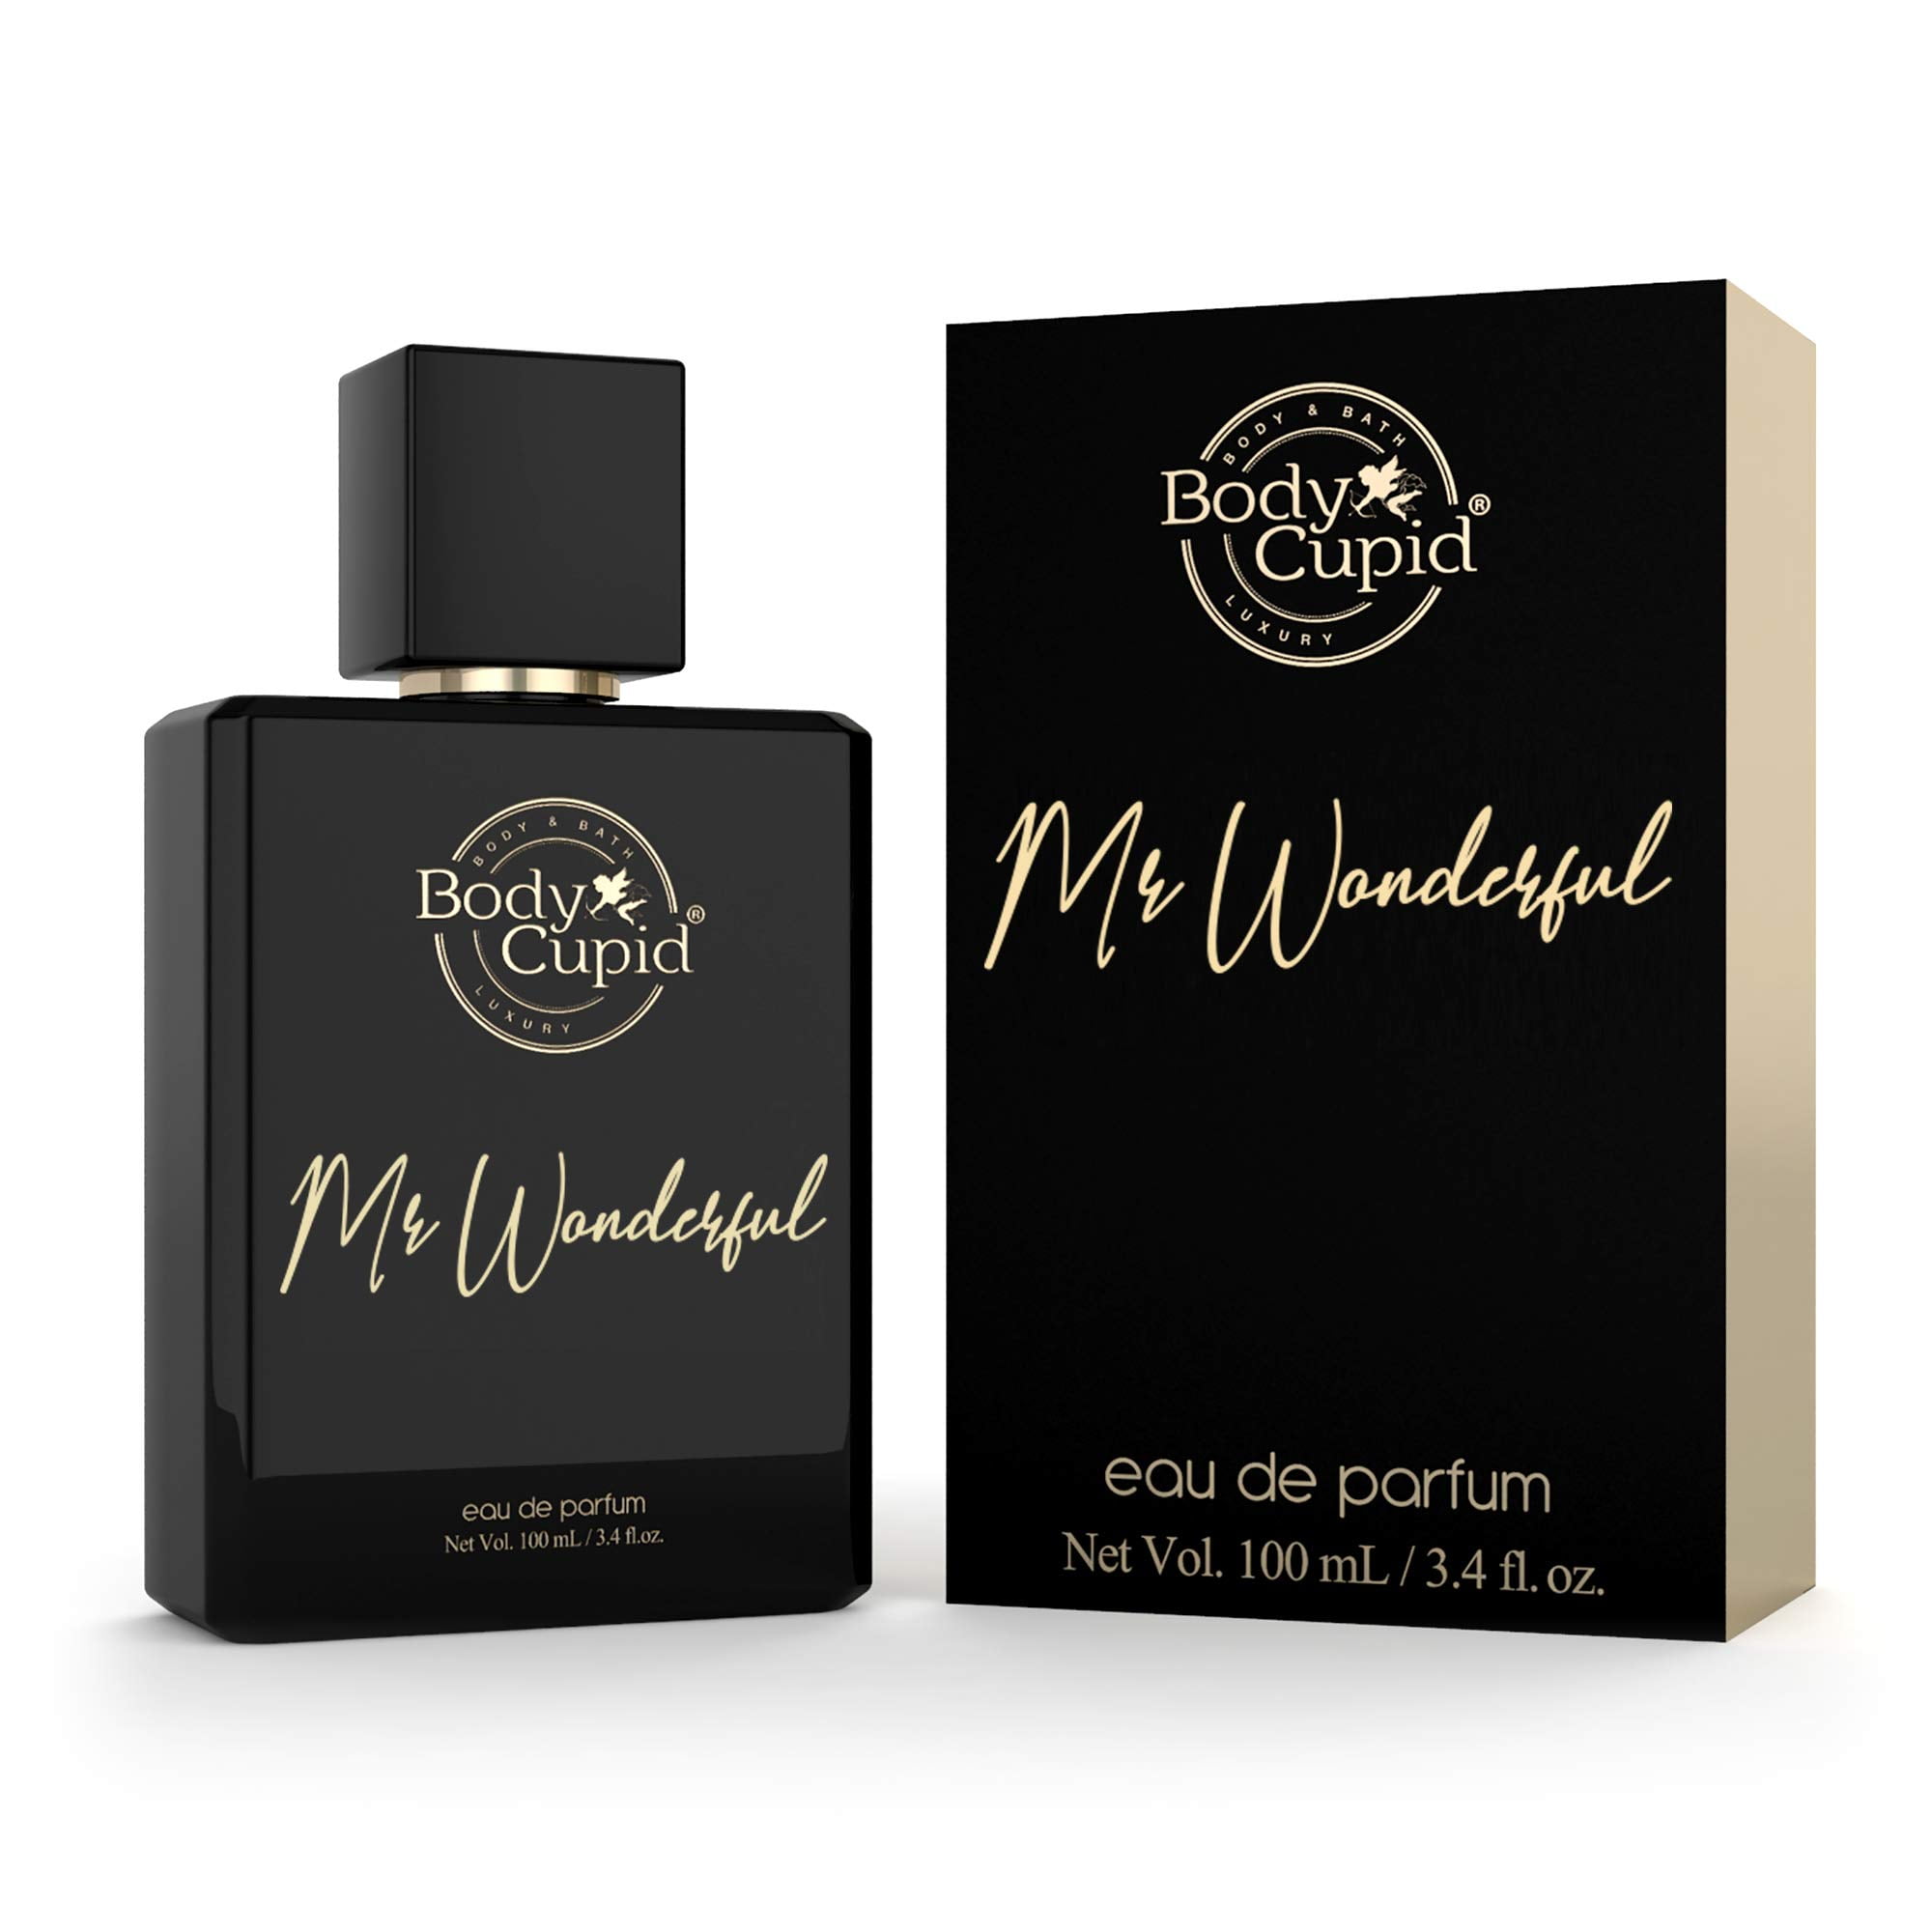 Body Cupid Exotic Oud Perfume for Men - Eau de Parfum - 100mL 